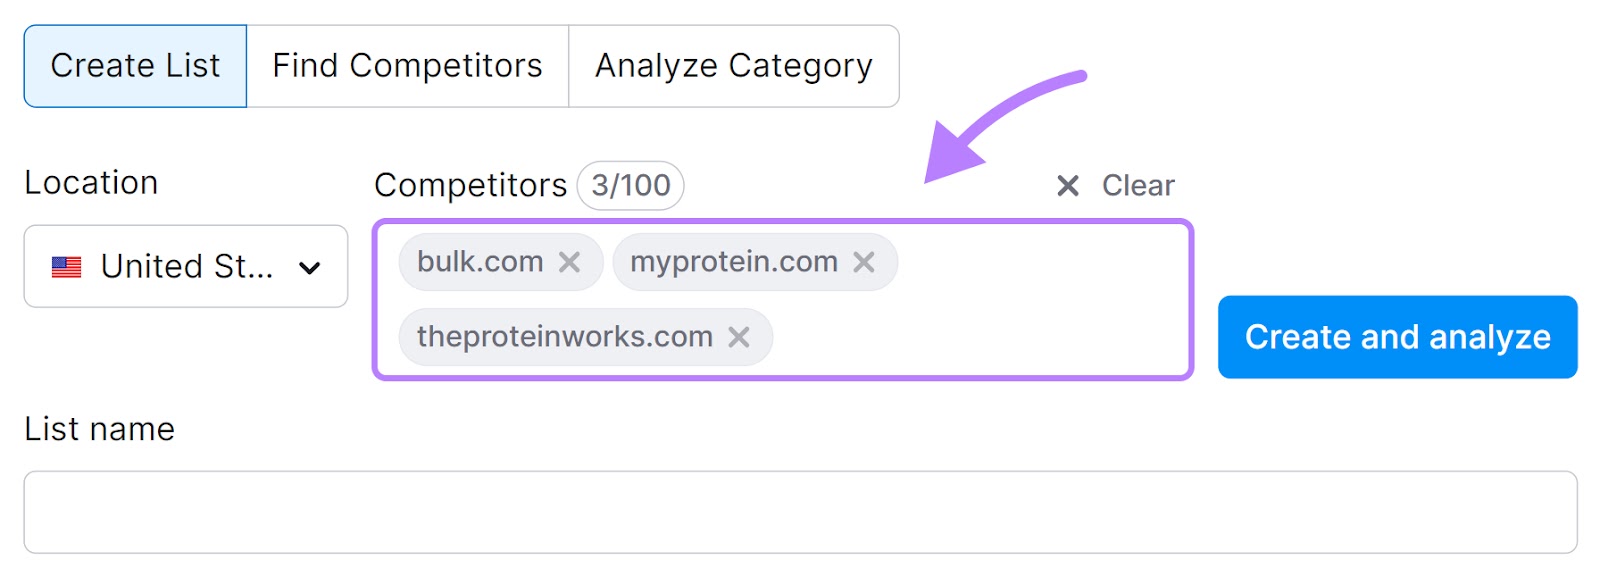 "bulk.com," "myprotein.com," and "theproteinworks.com" entered under "Competitors" box